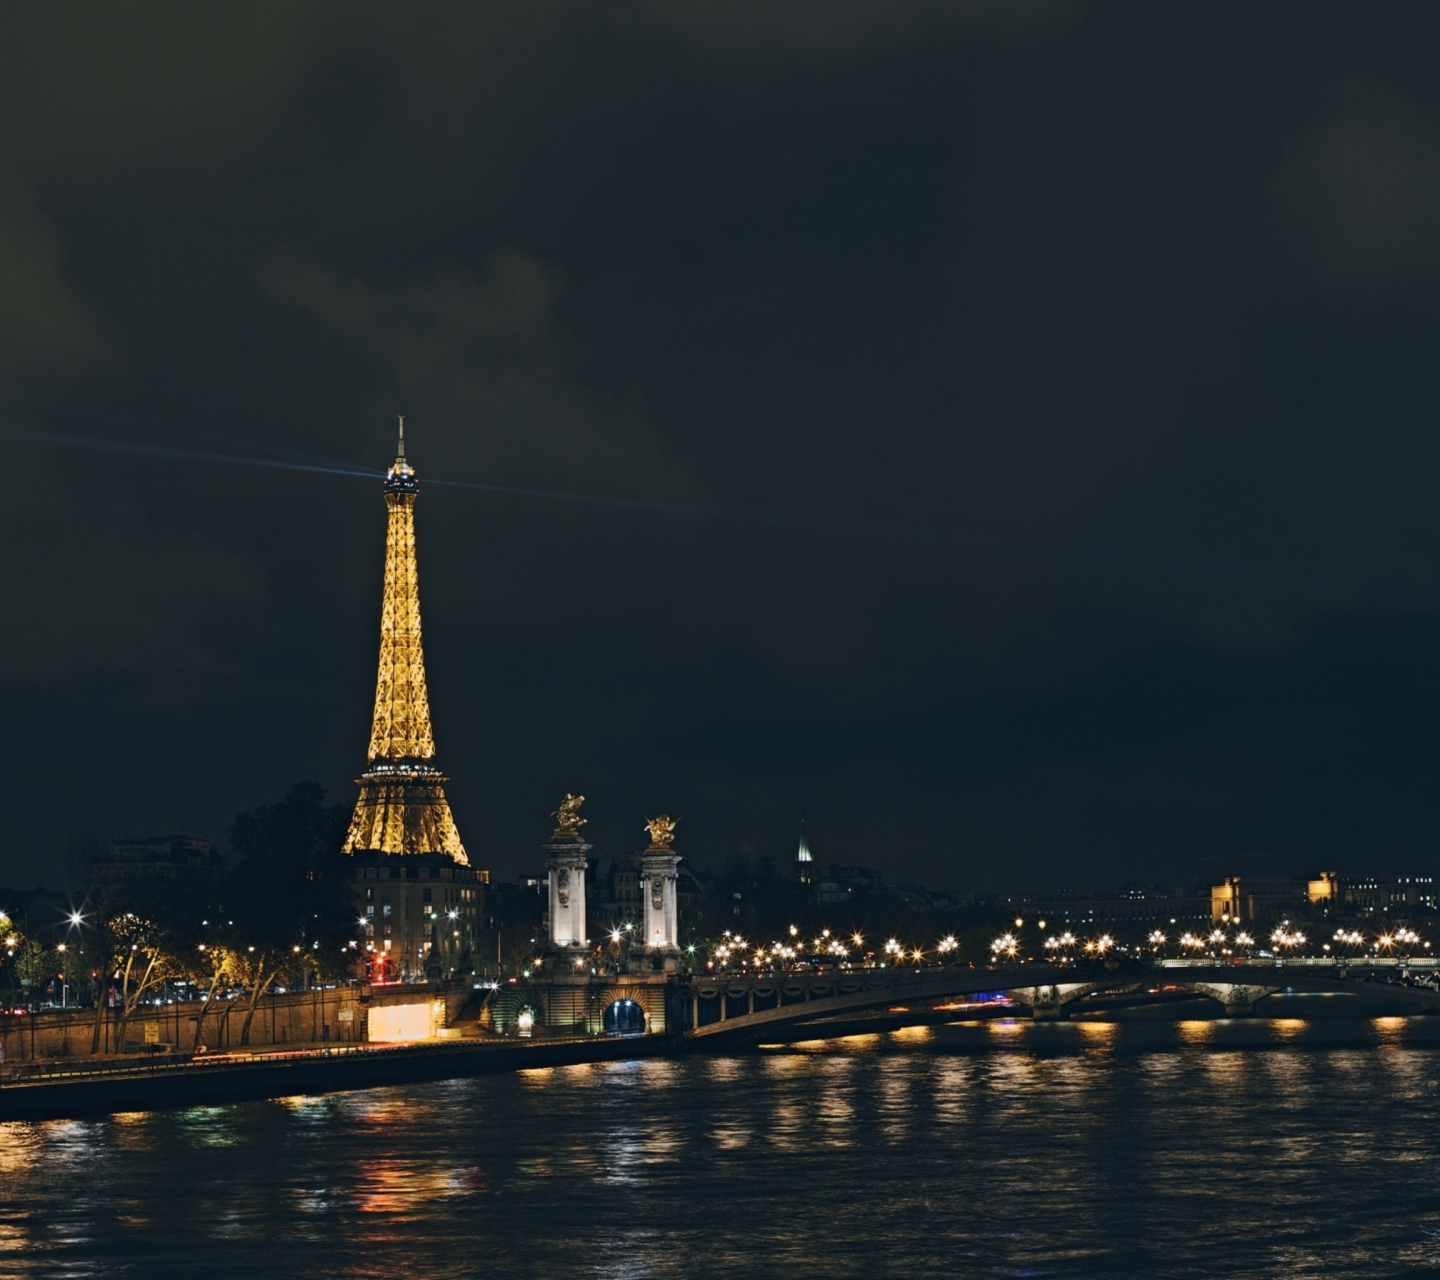 Das Eiffel Tower In Paris France Wallpaper 1440x1280